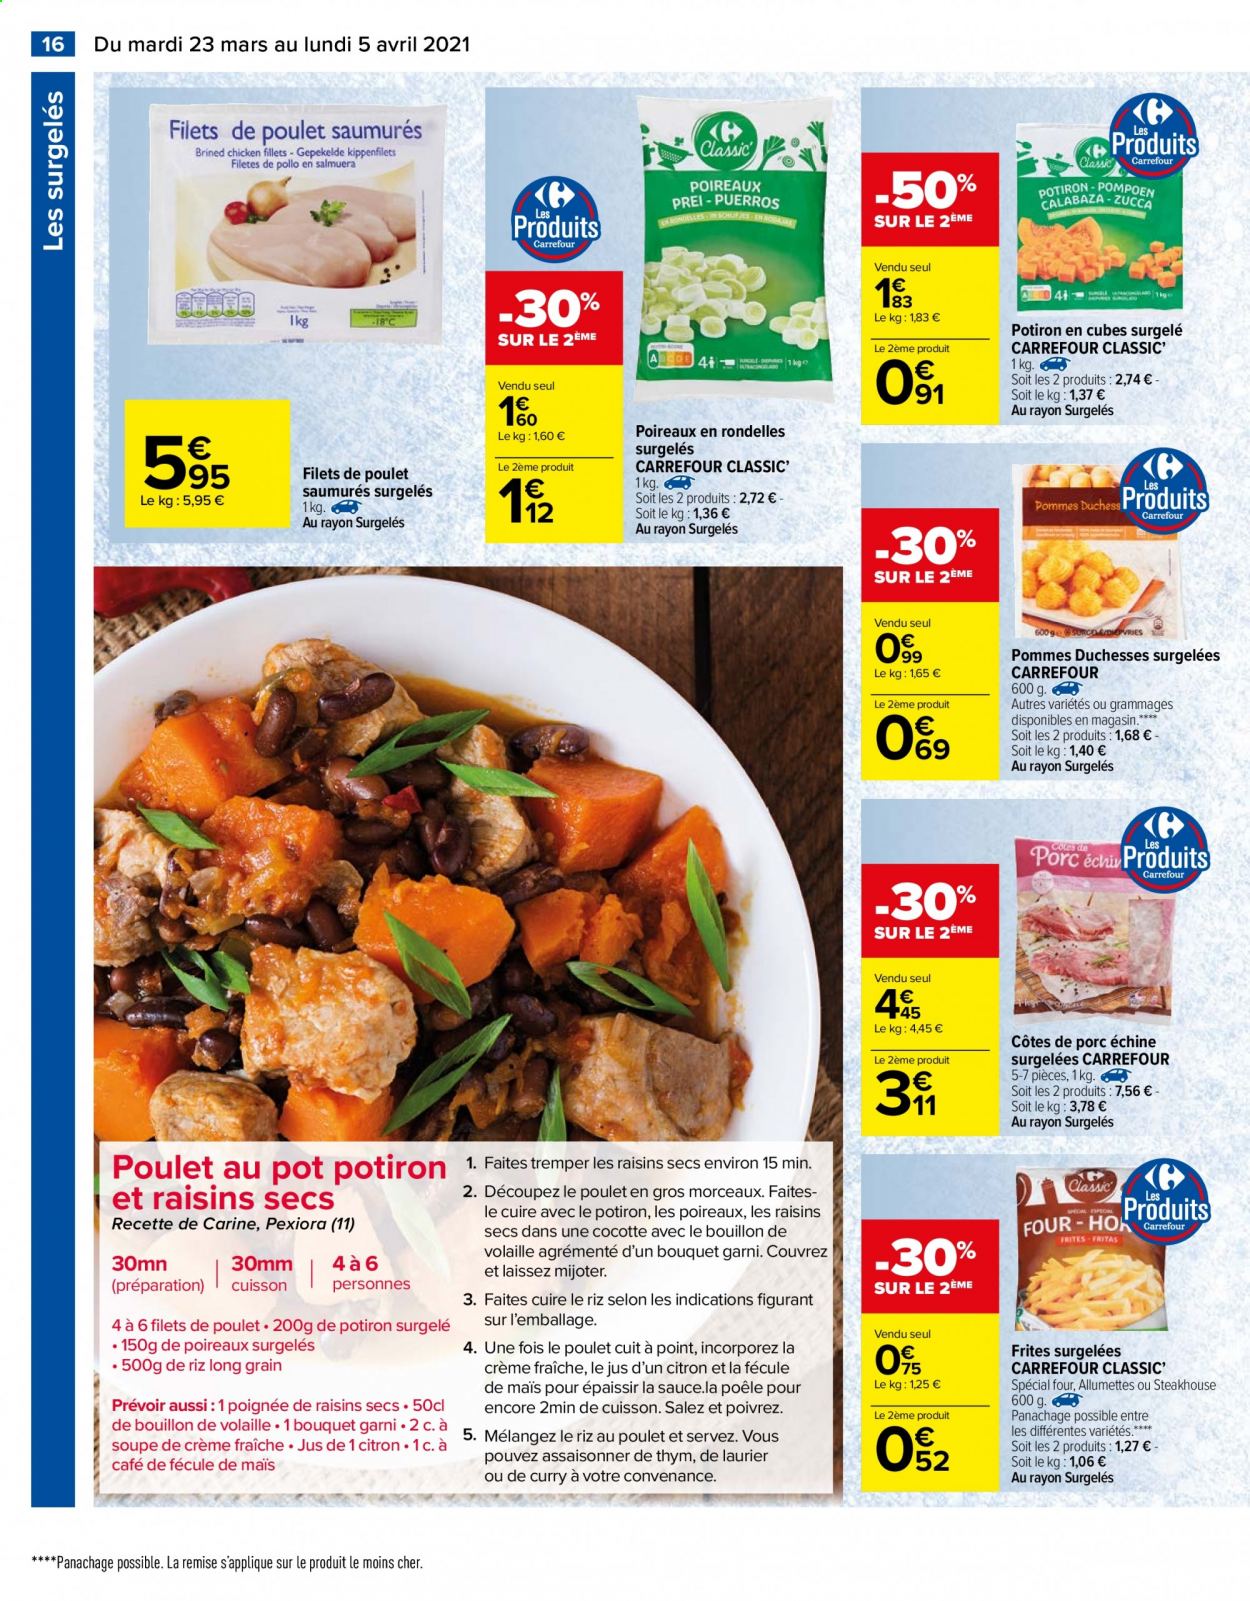 thumbnail - Catalogue Carrefour Hypermarchés - 23/03/2021 - 05/04/2021 - Produits soldés - côtes de porc, côtes de porc échine, viande de porc, potimarron, filet de poulet, viande de poulet, soupe, allumettes, frites, bouillon, curry, thym, café, cocotte, four. Page 16.